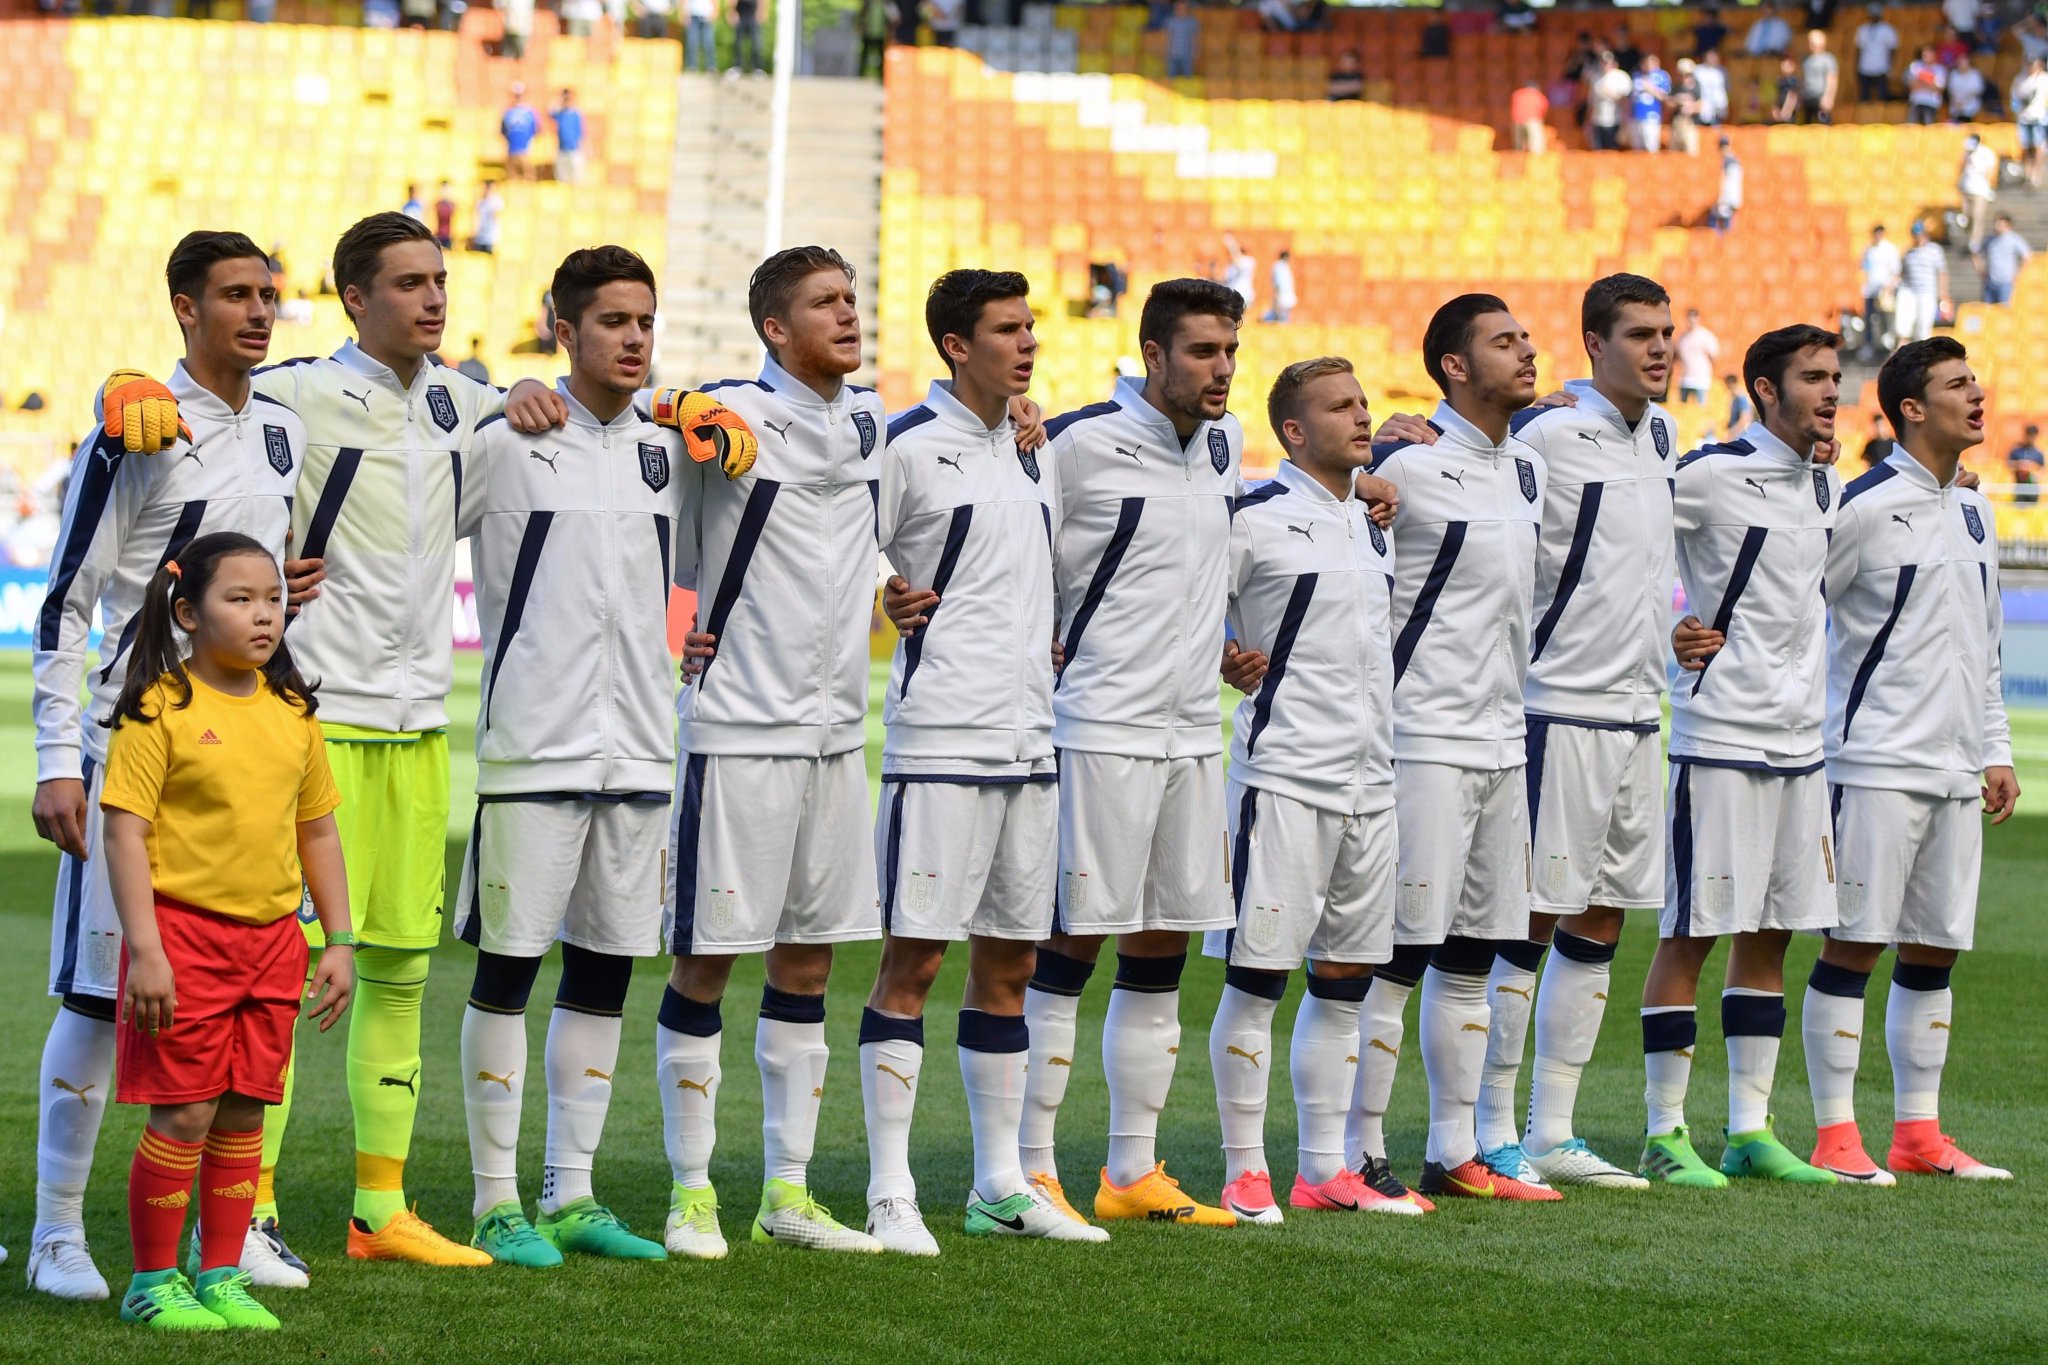 Mondiali Under 20, Italia di bronzo: Uruguay battuto ai rigori, decisivo il portiere Plizzari